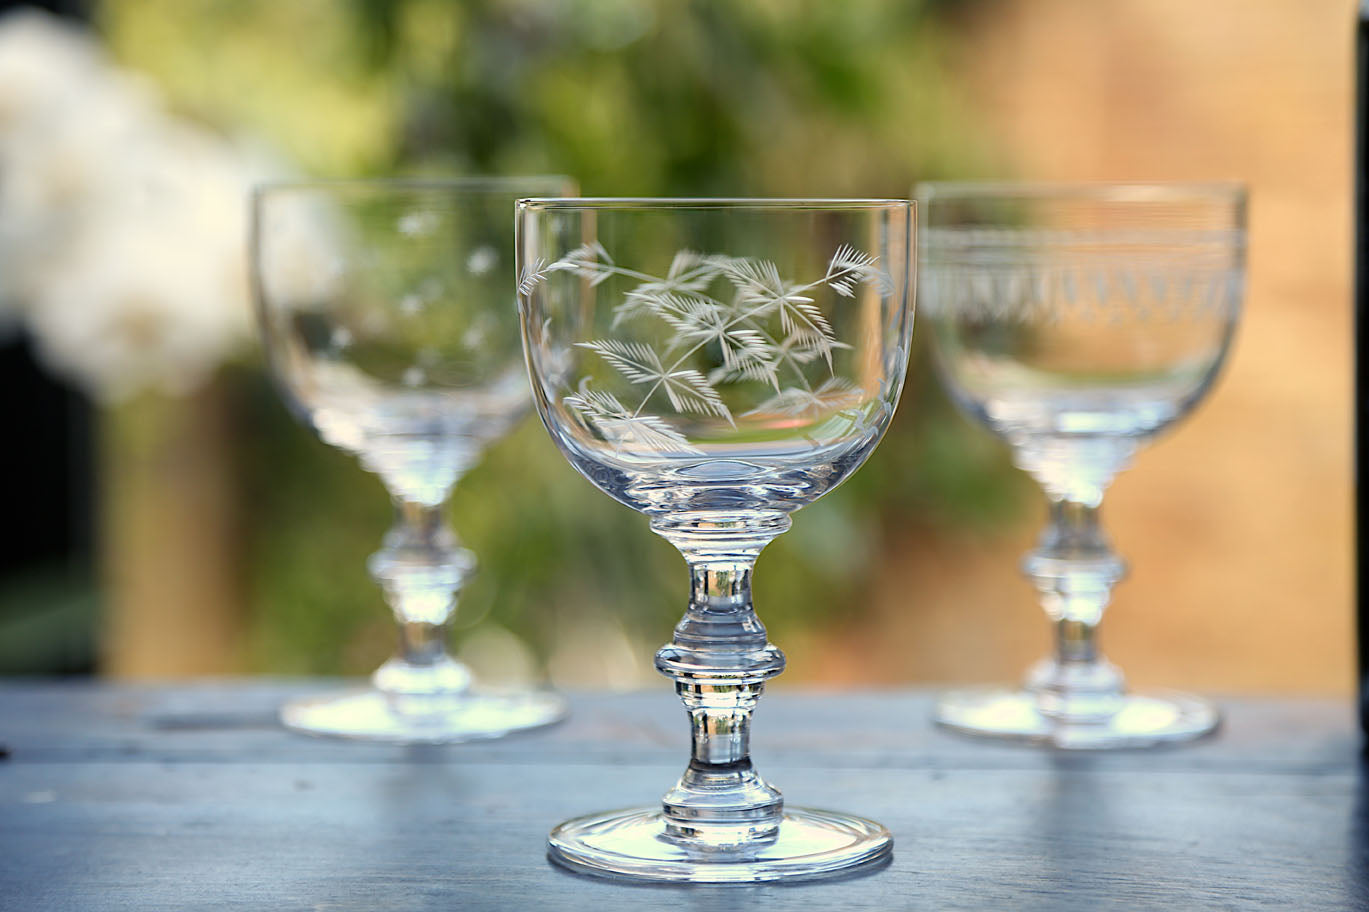 Set of 4 Crystal Wine Goblets with Fern Design